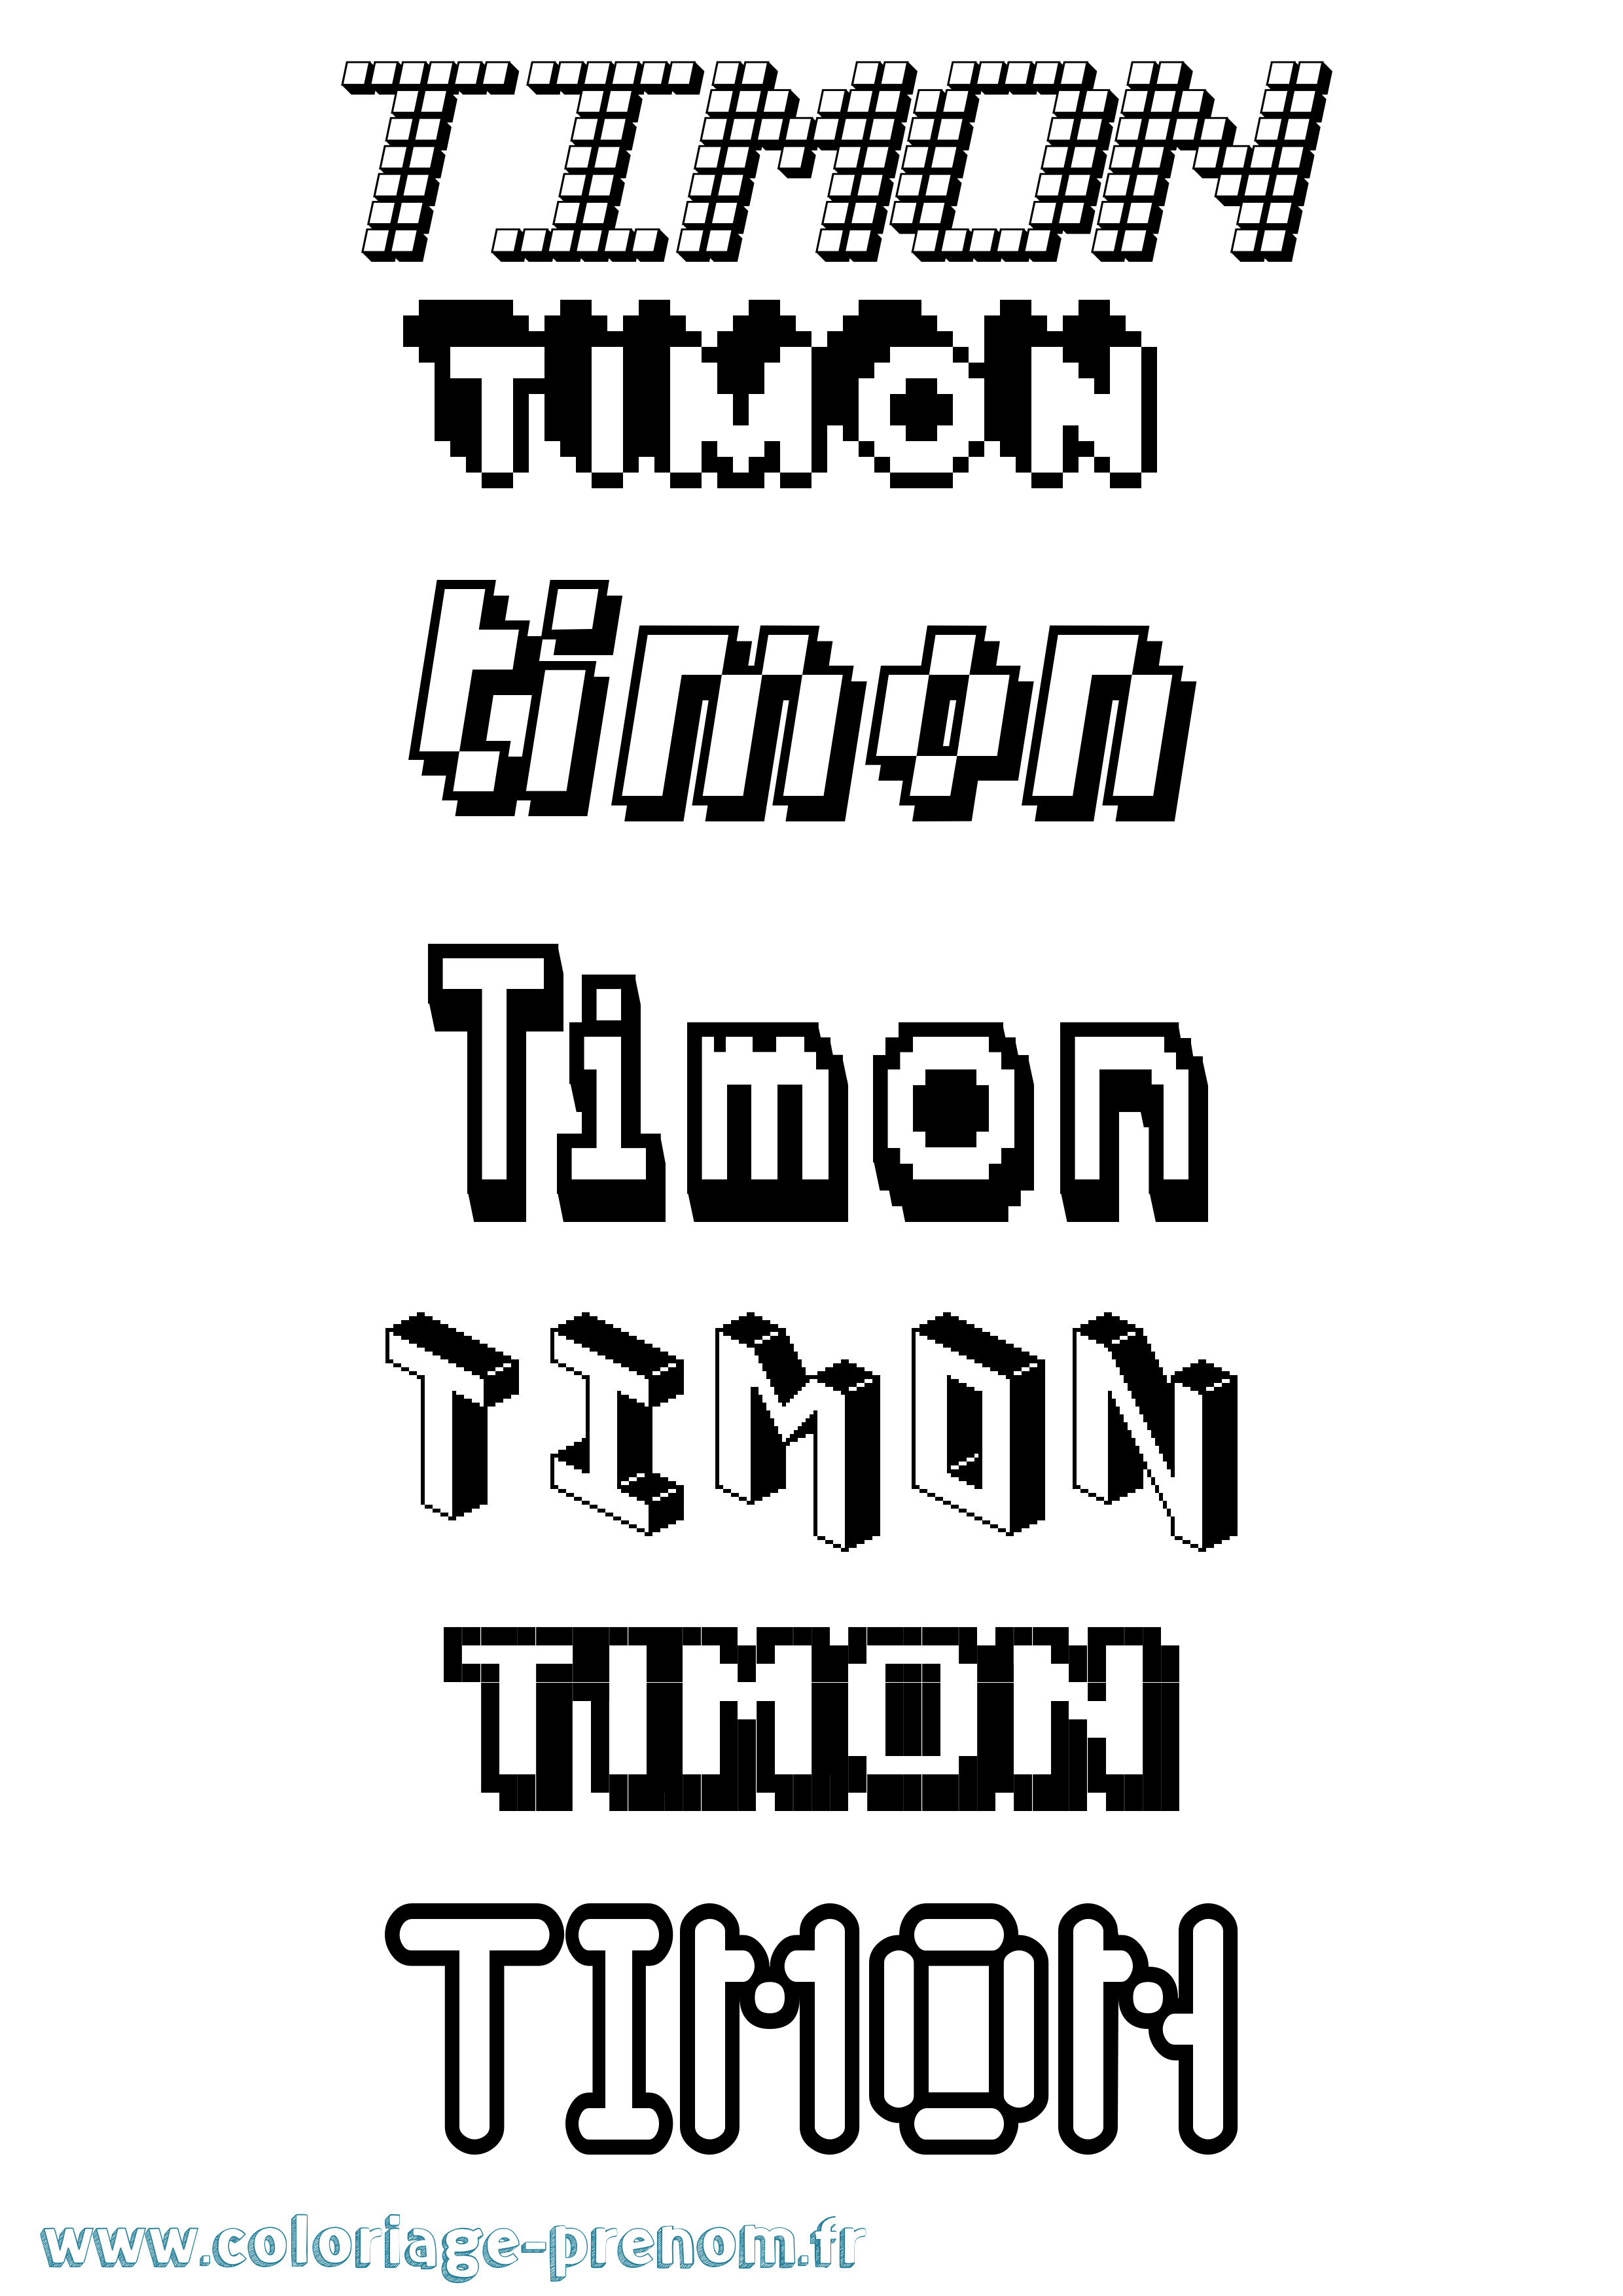 Coloriage prénom Timon Pixel